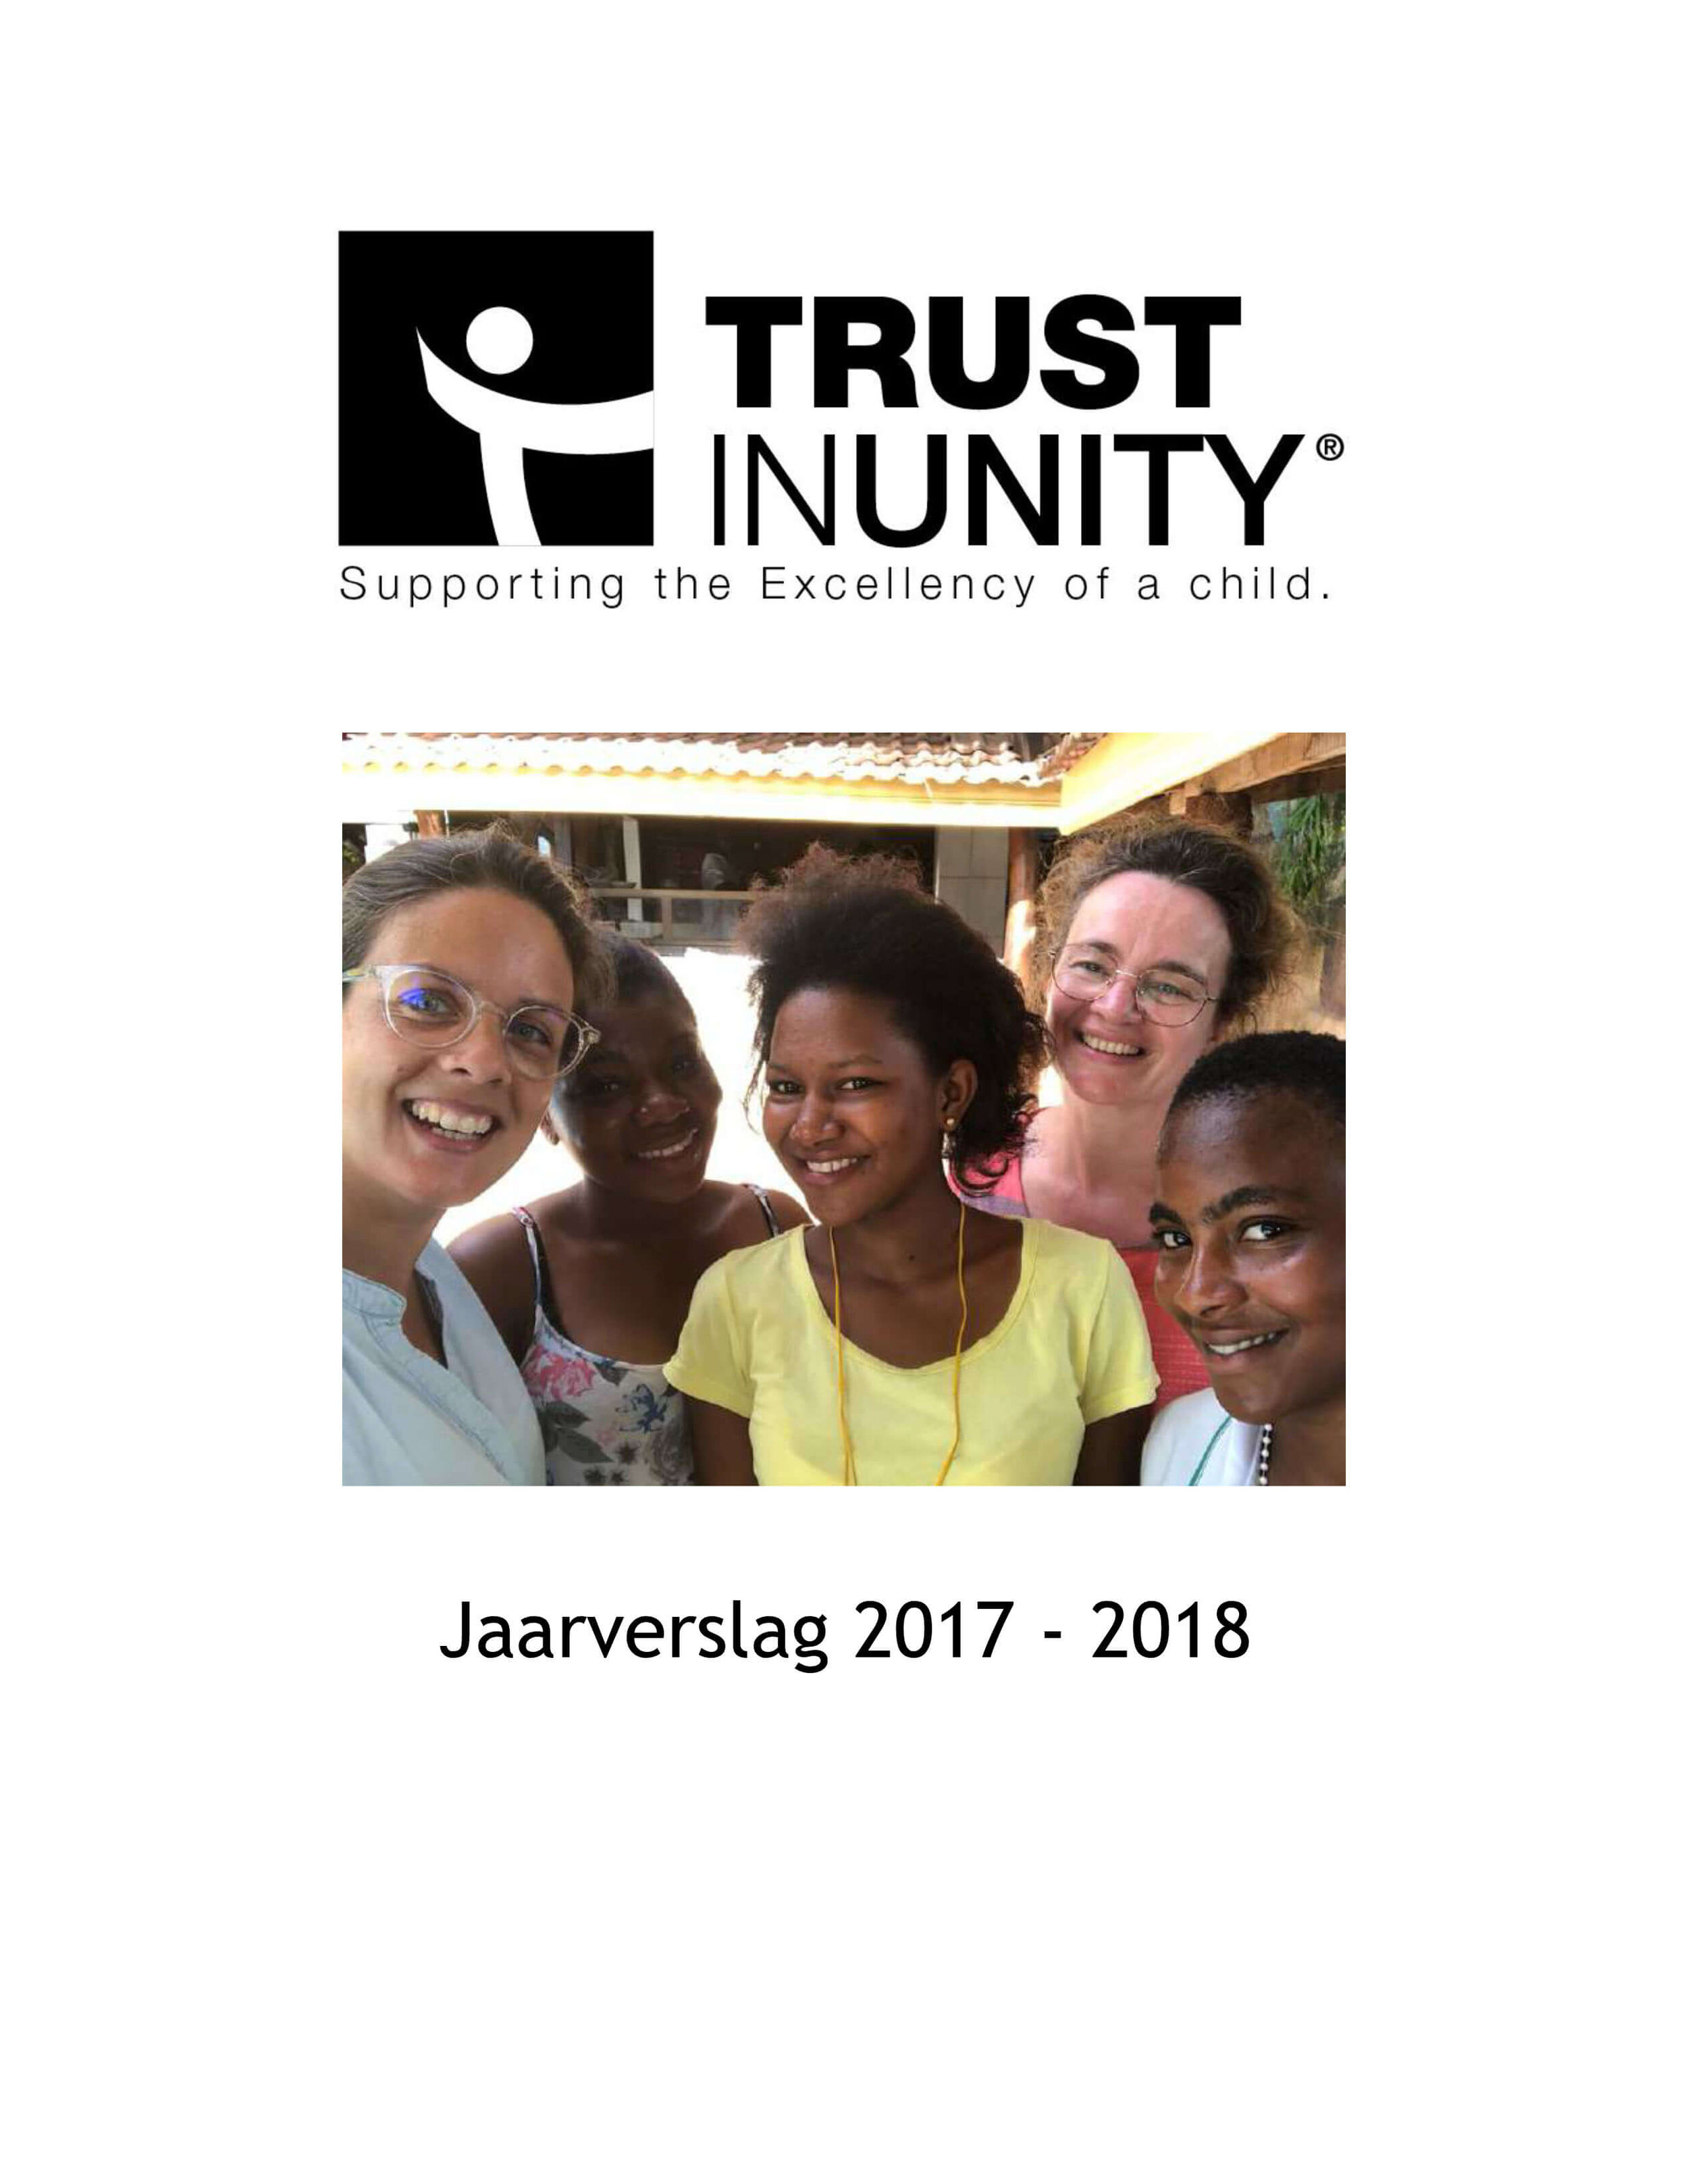 Trust in Unity, Jaarverslag 2017-2018.jpg